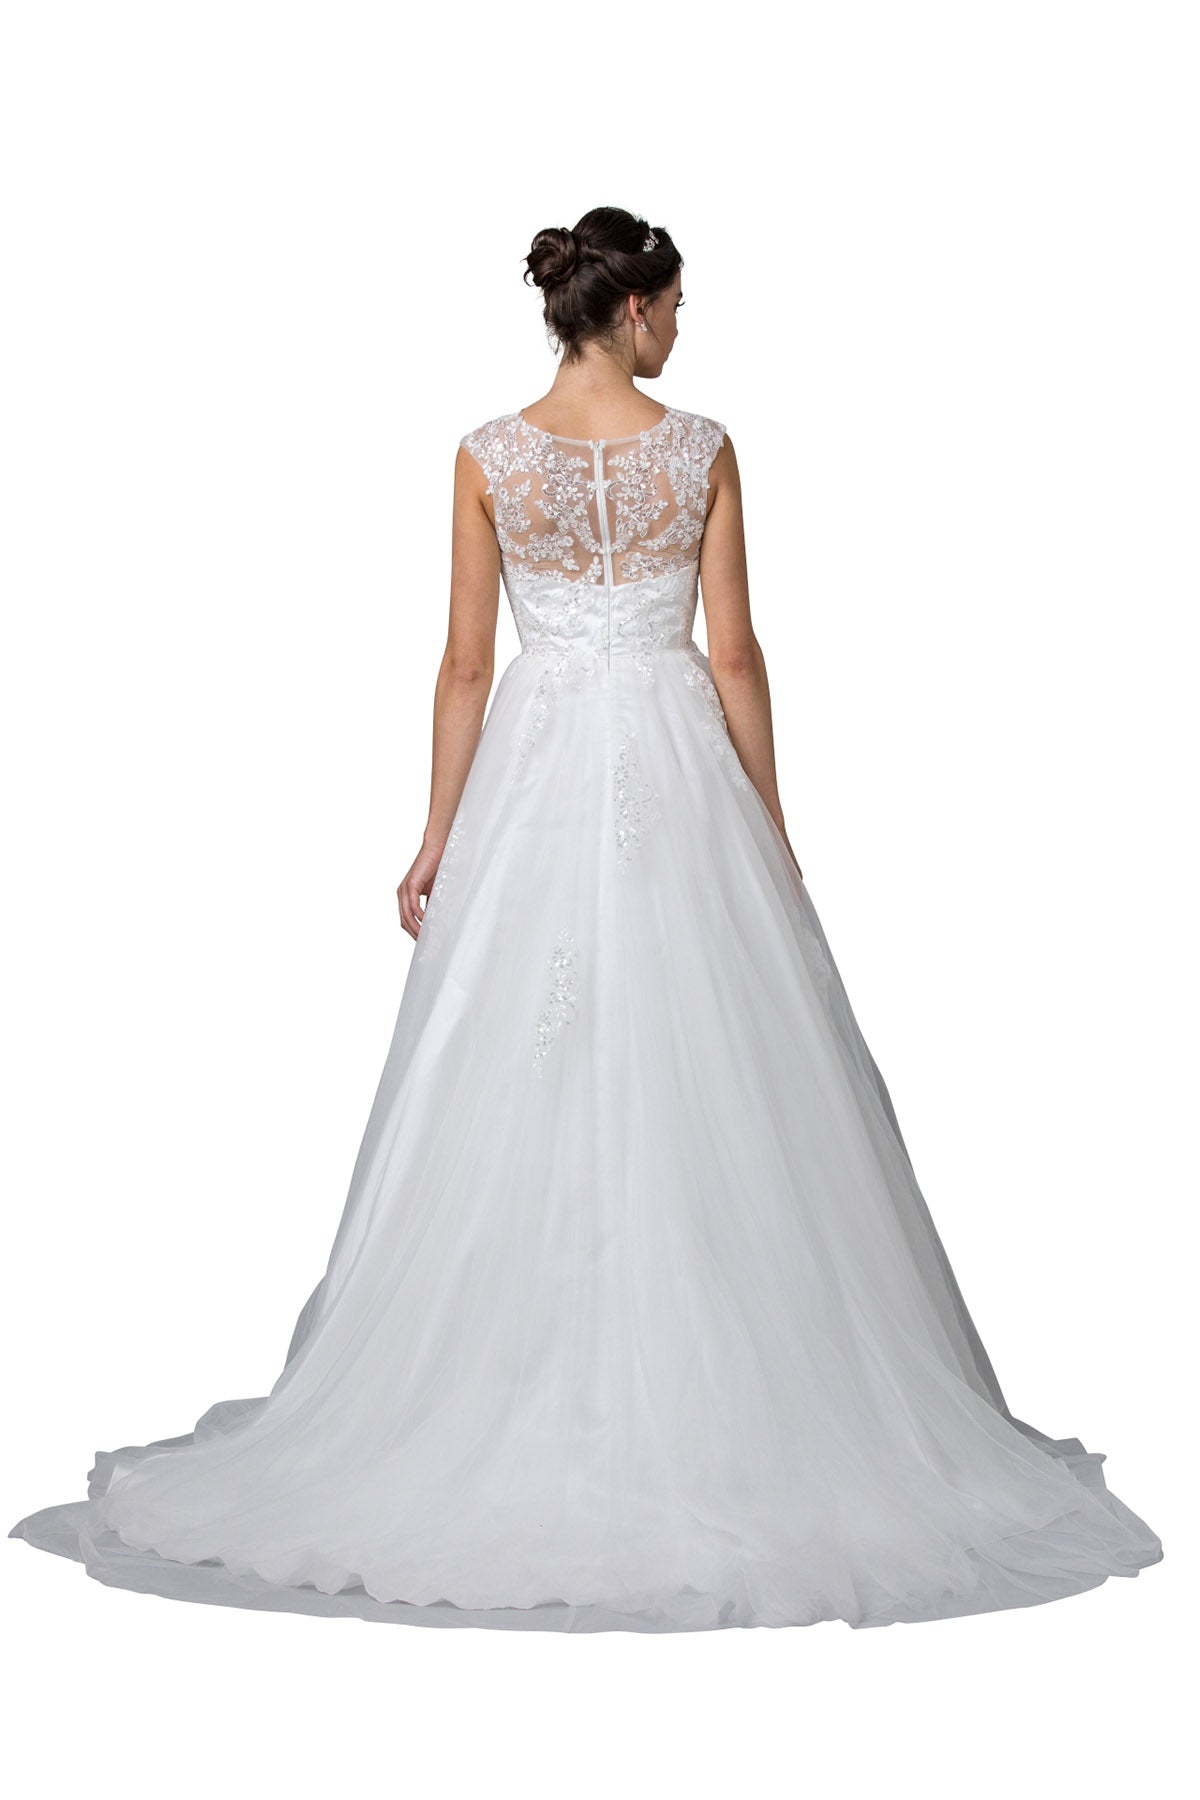 Aspeed Design -W2443 V Neck Bridal A-Line Dress